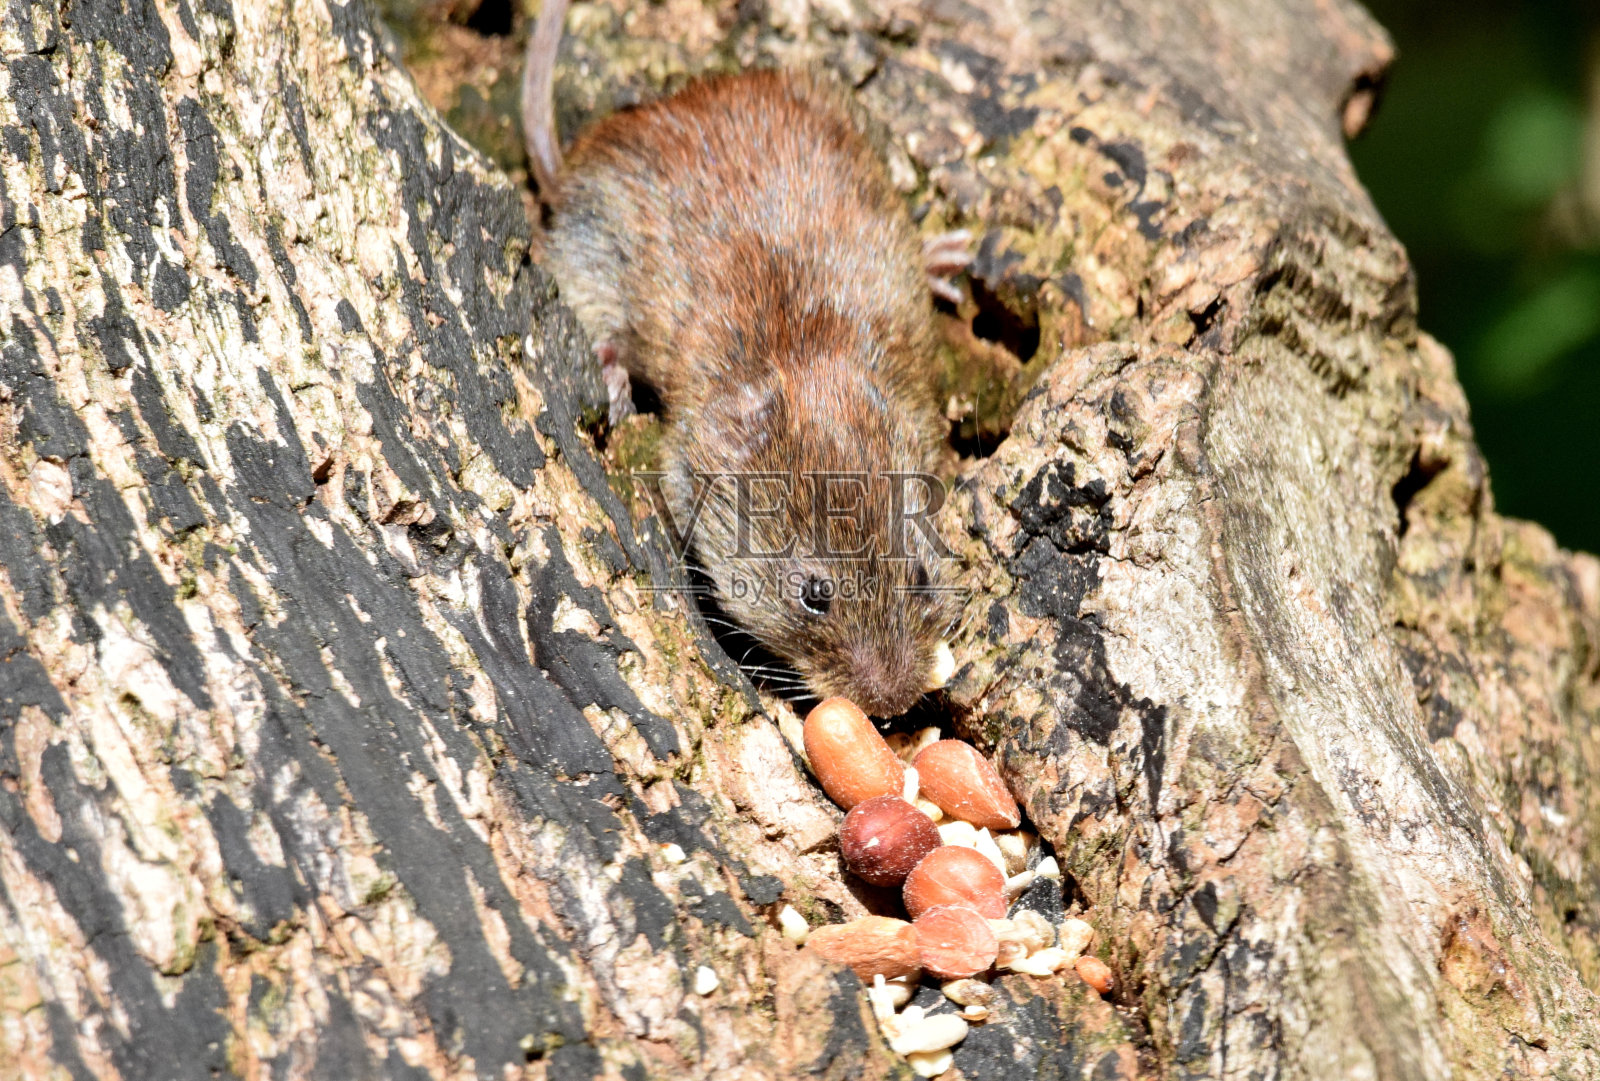 可爱的银行田鼠吃坚果野生动物有趣照片摄影图片